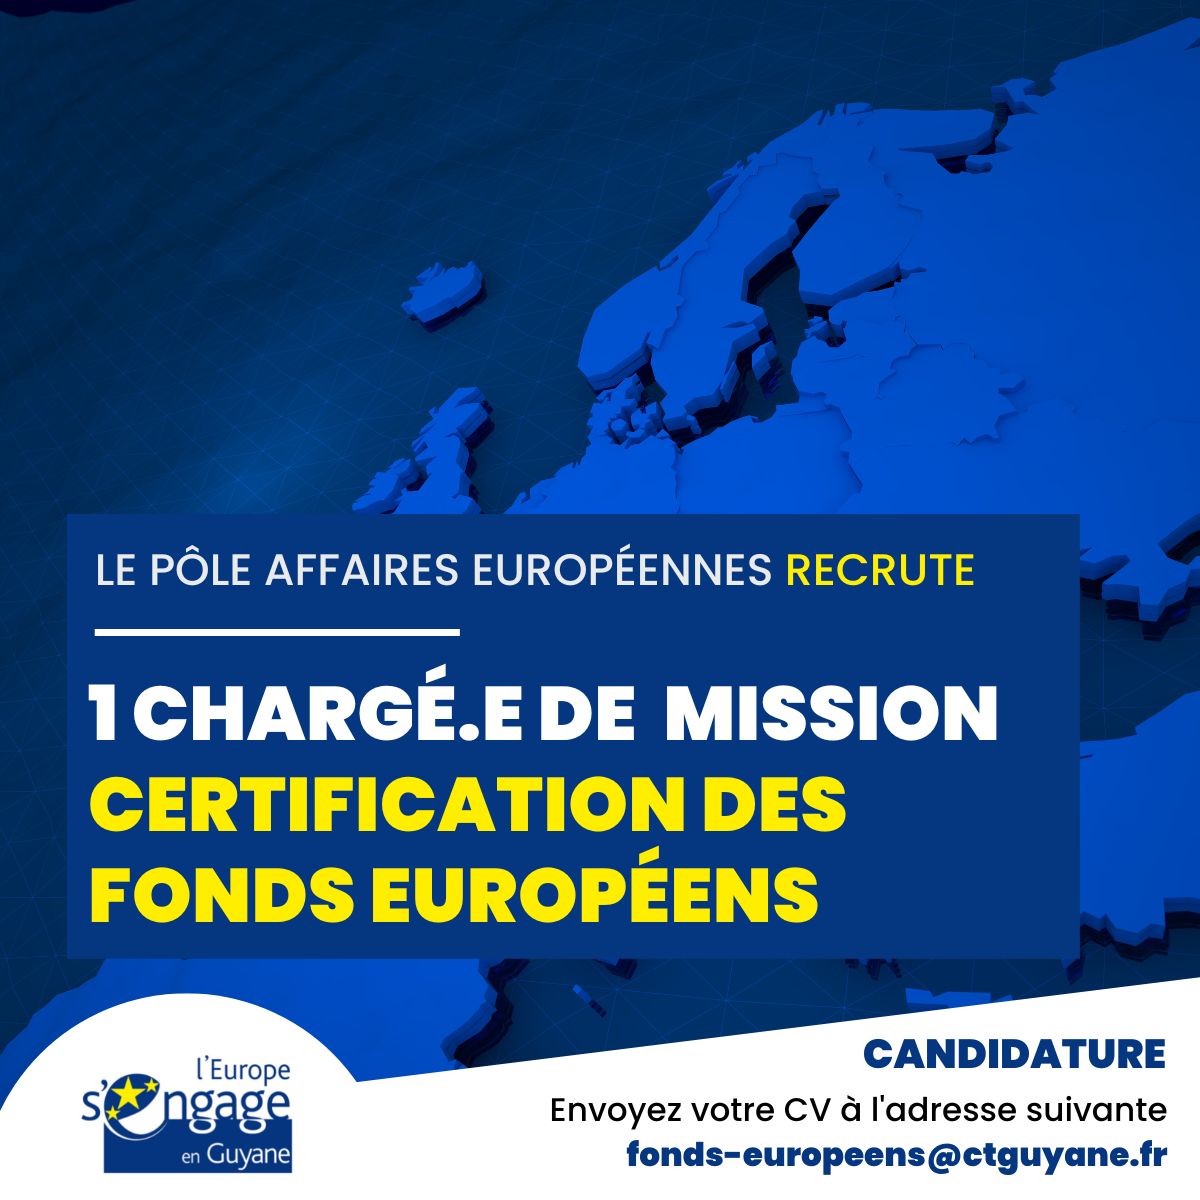 1 Chargeģ.e de mission certification des fonds europeģens